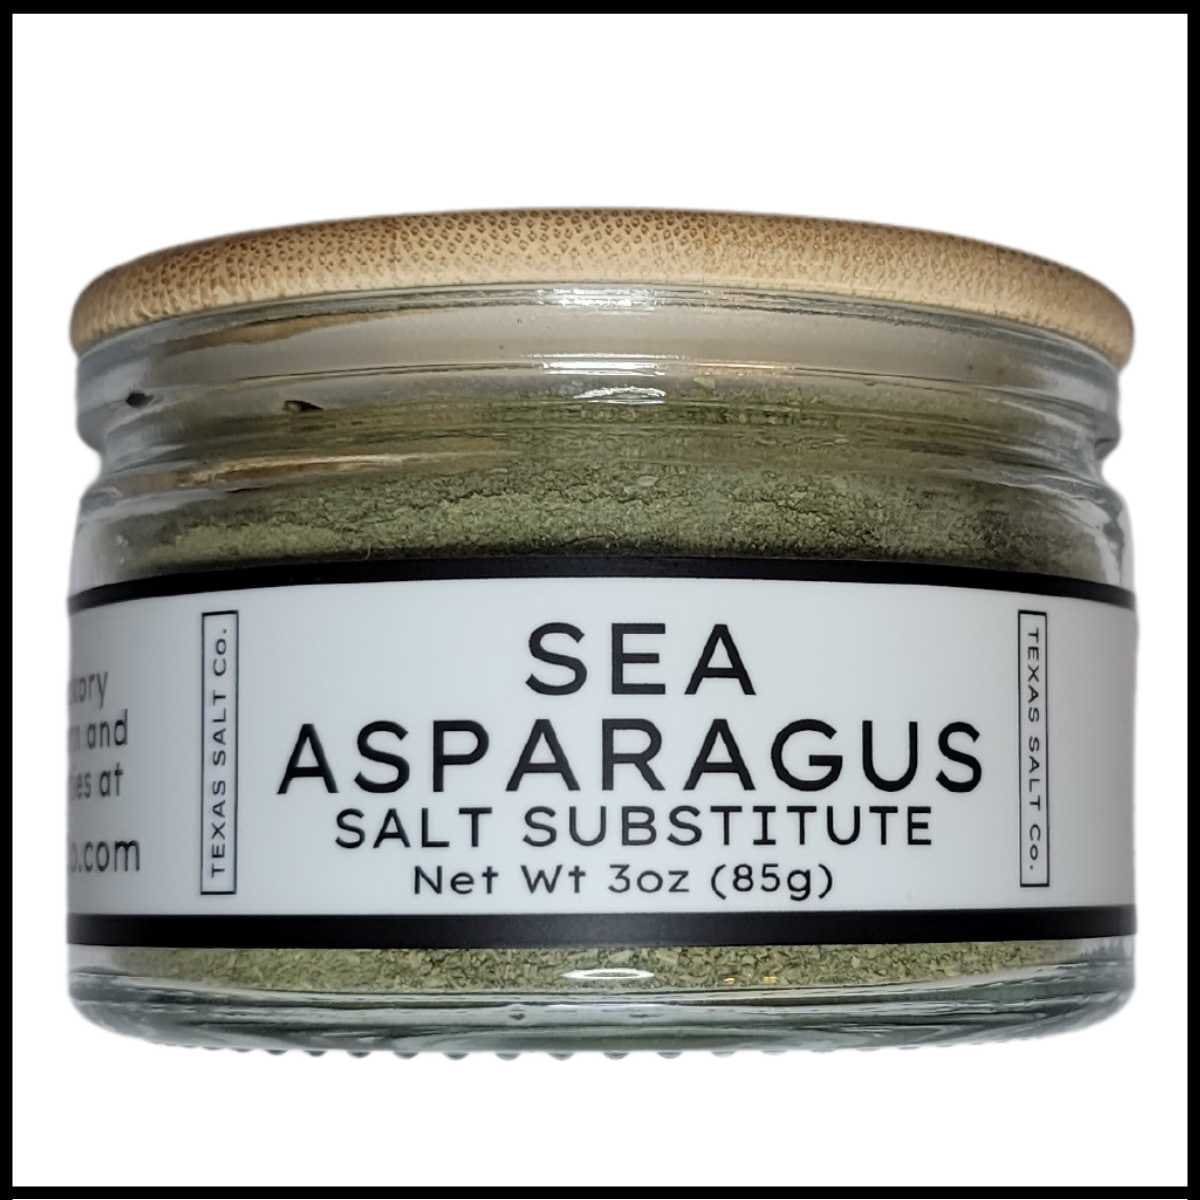 Sea Asparagus salt Substitute pic